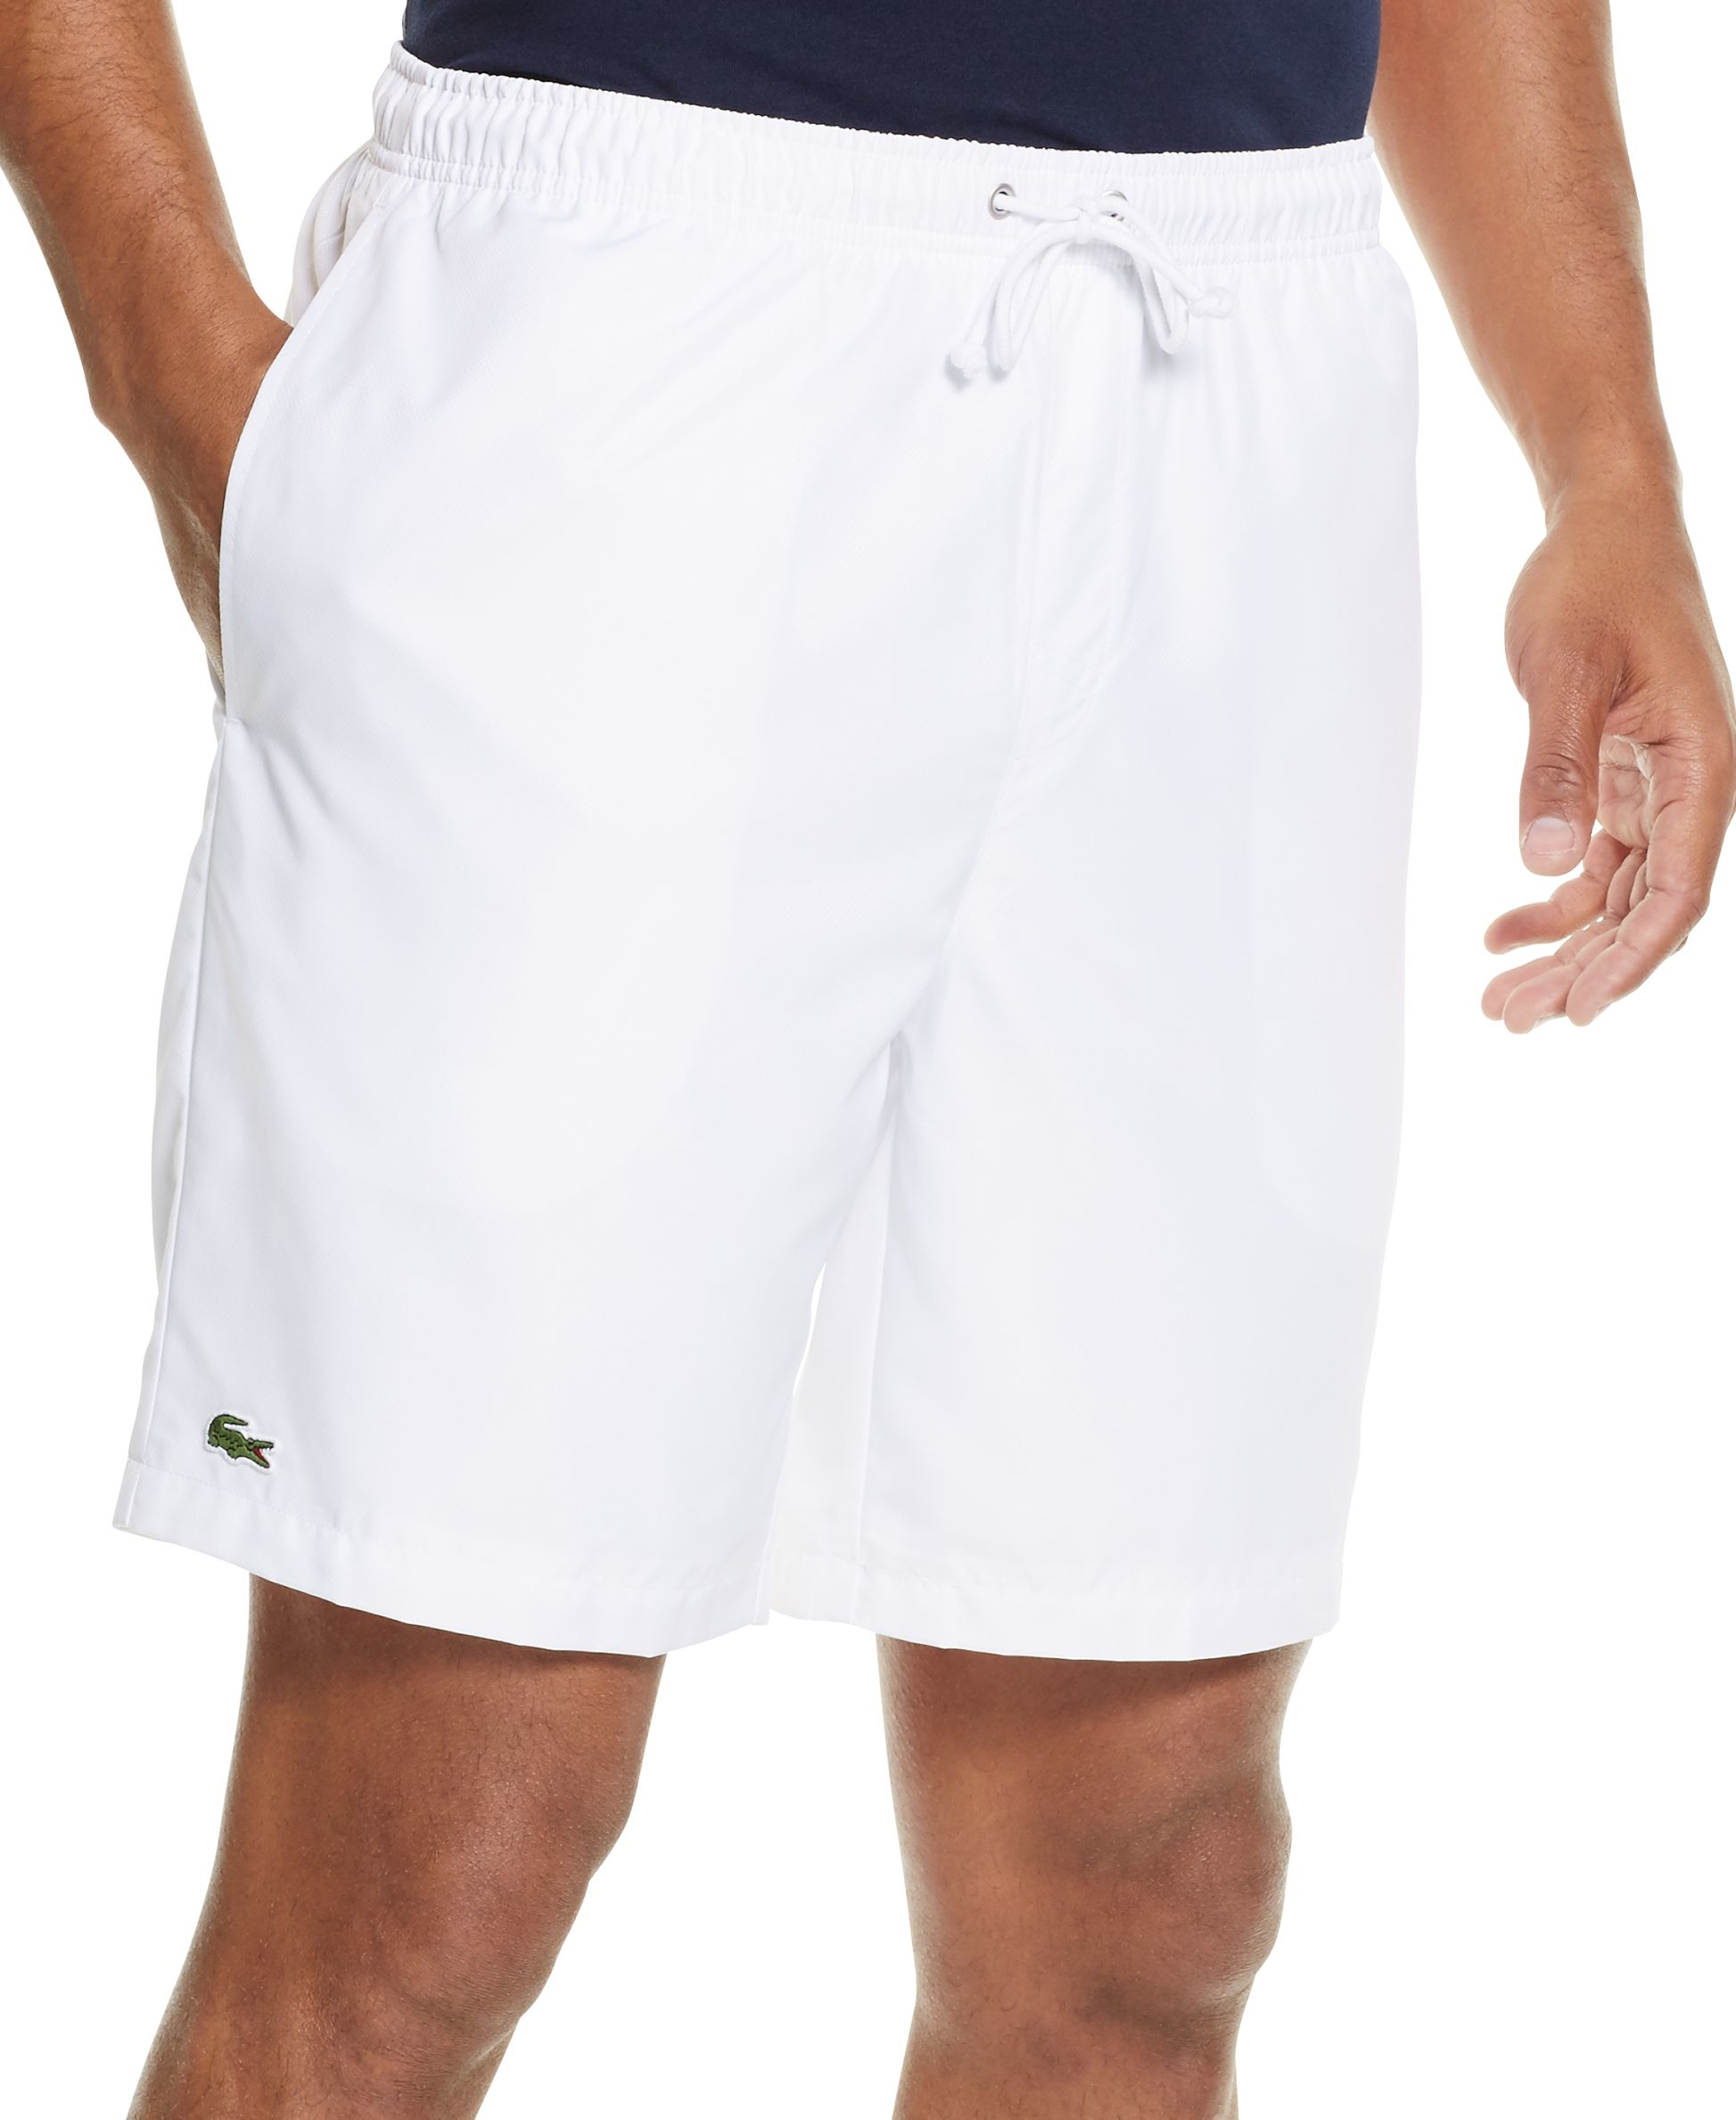 Lyst - Lacoste Men's Sport Drawstring Shorts in White for Men